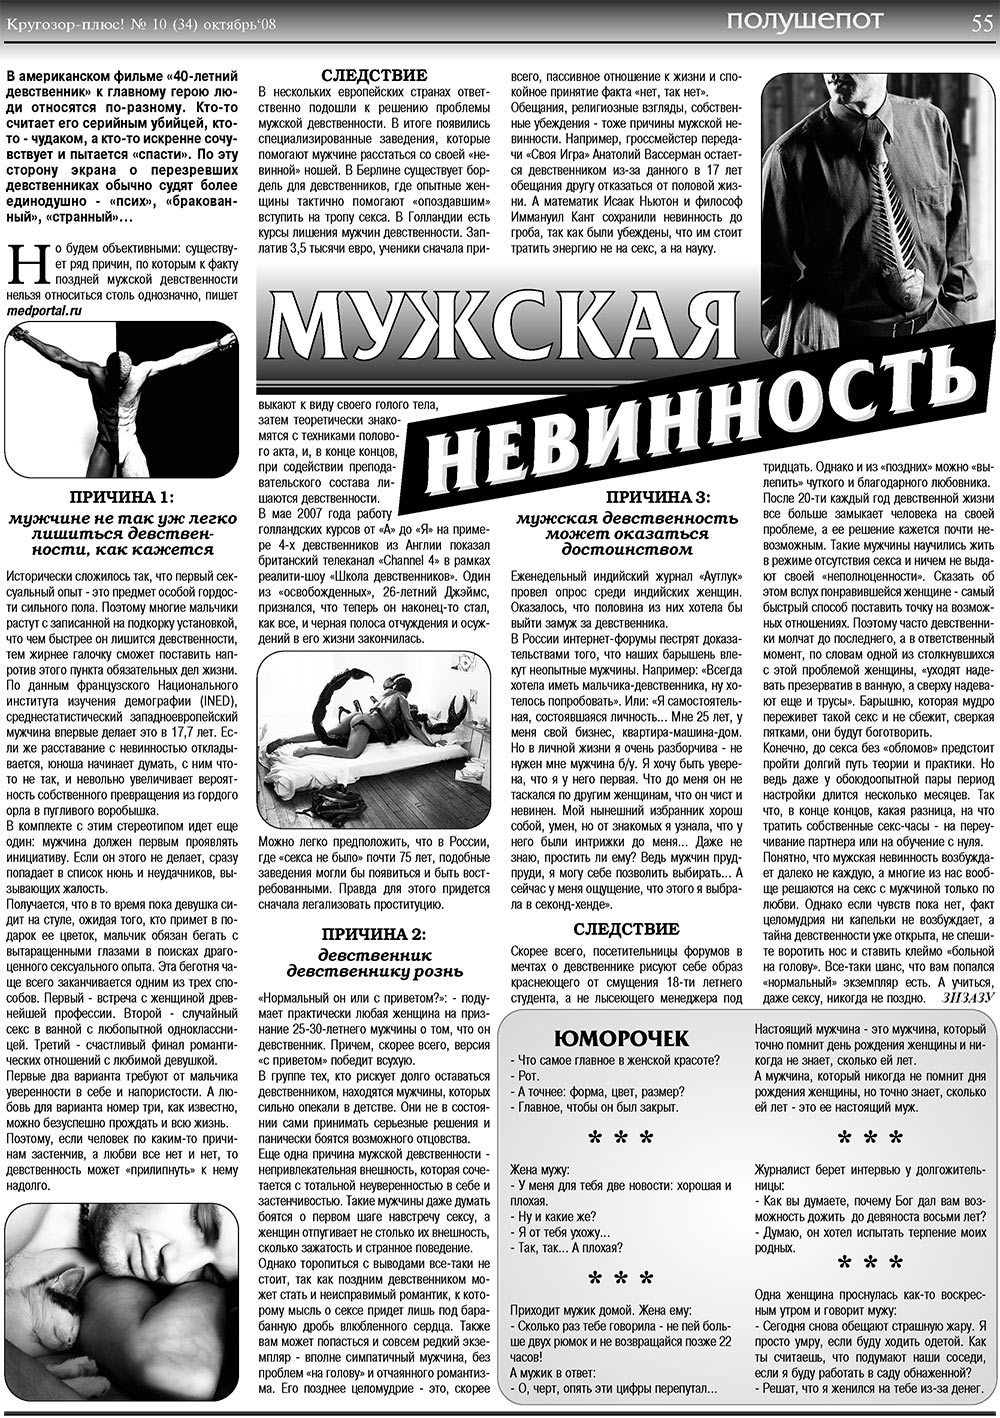 Кругозор плюс!, газета. 2008 №10 стр.55